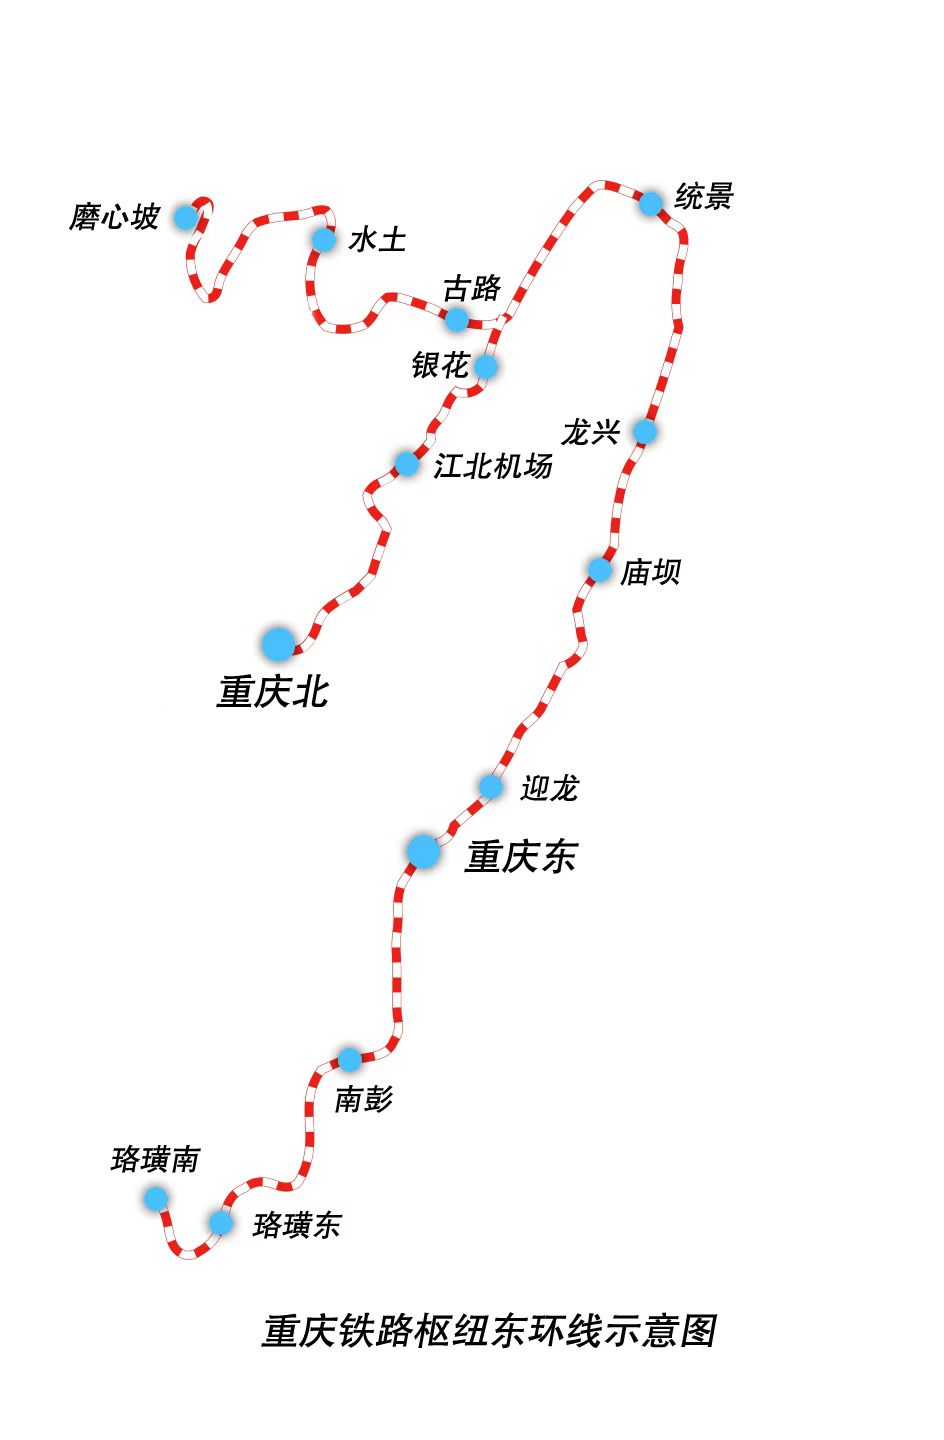 开通倒计时！重庆铁路枢纽东环线进入动态检测阶段